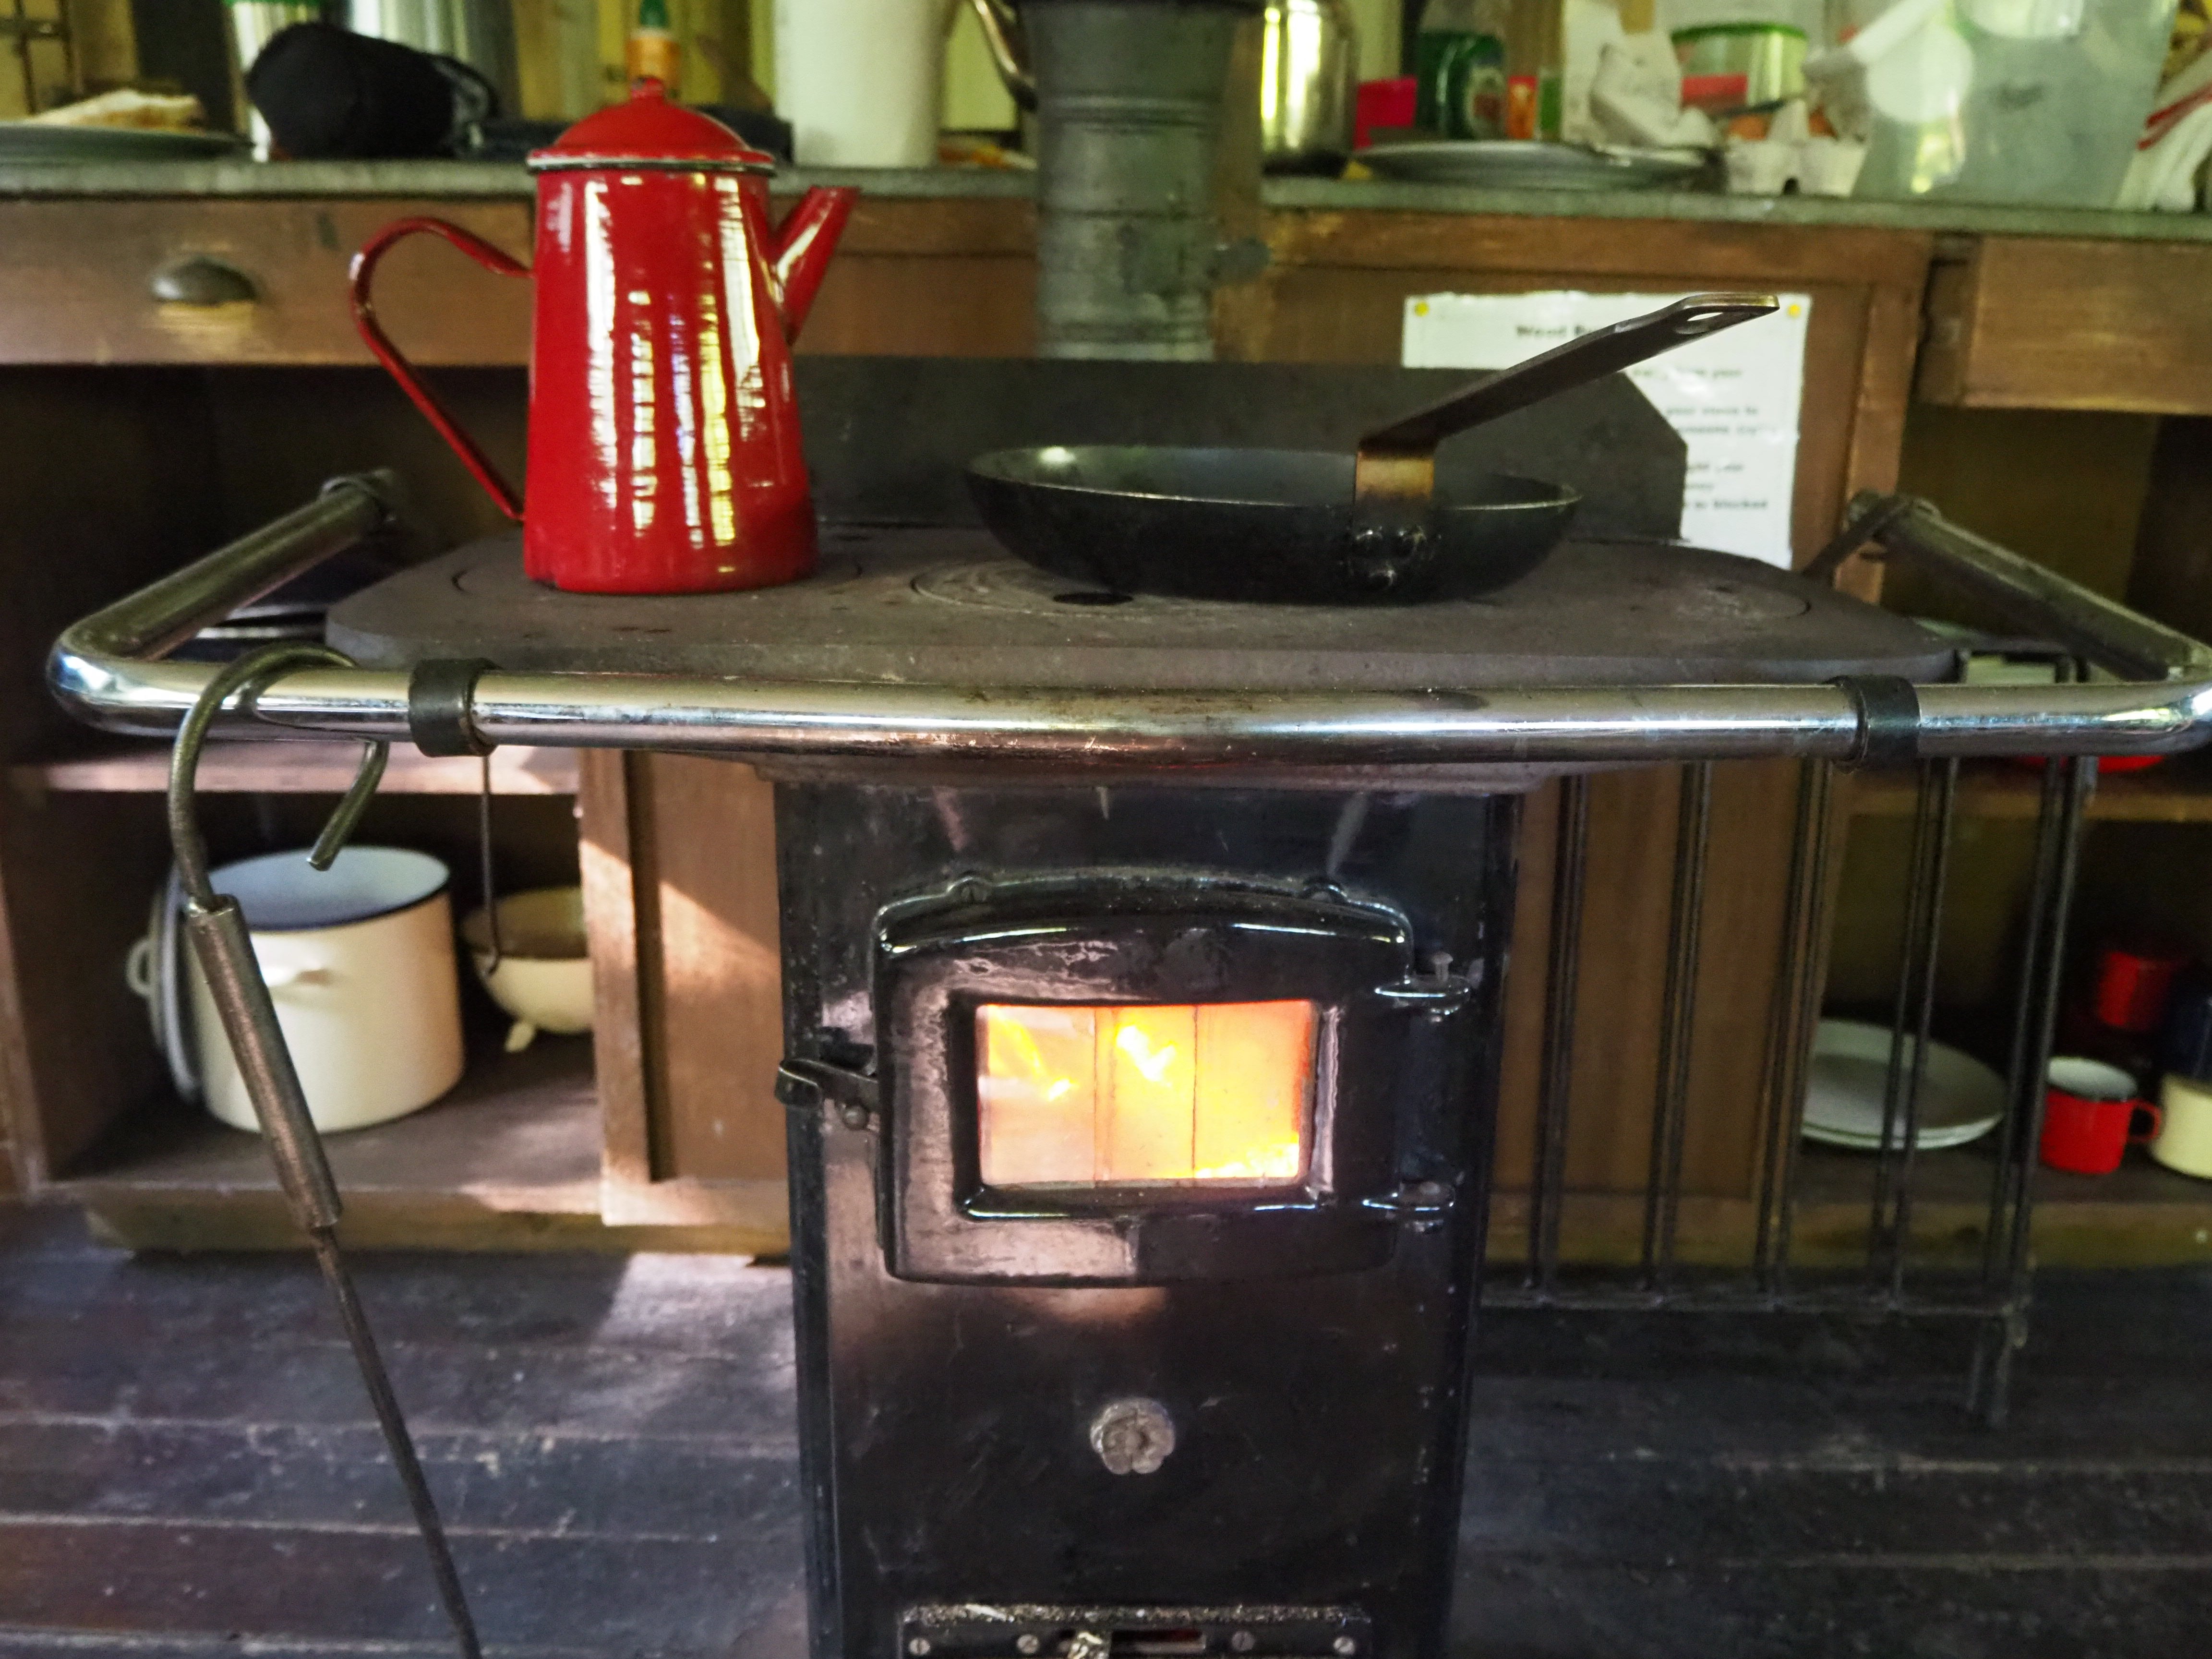 The wood burning stove